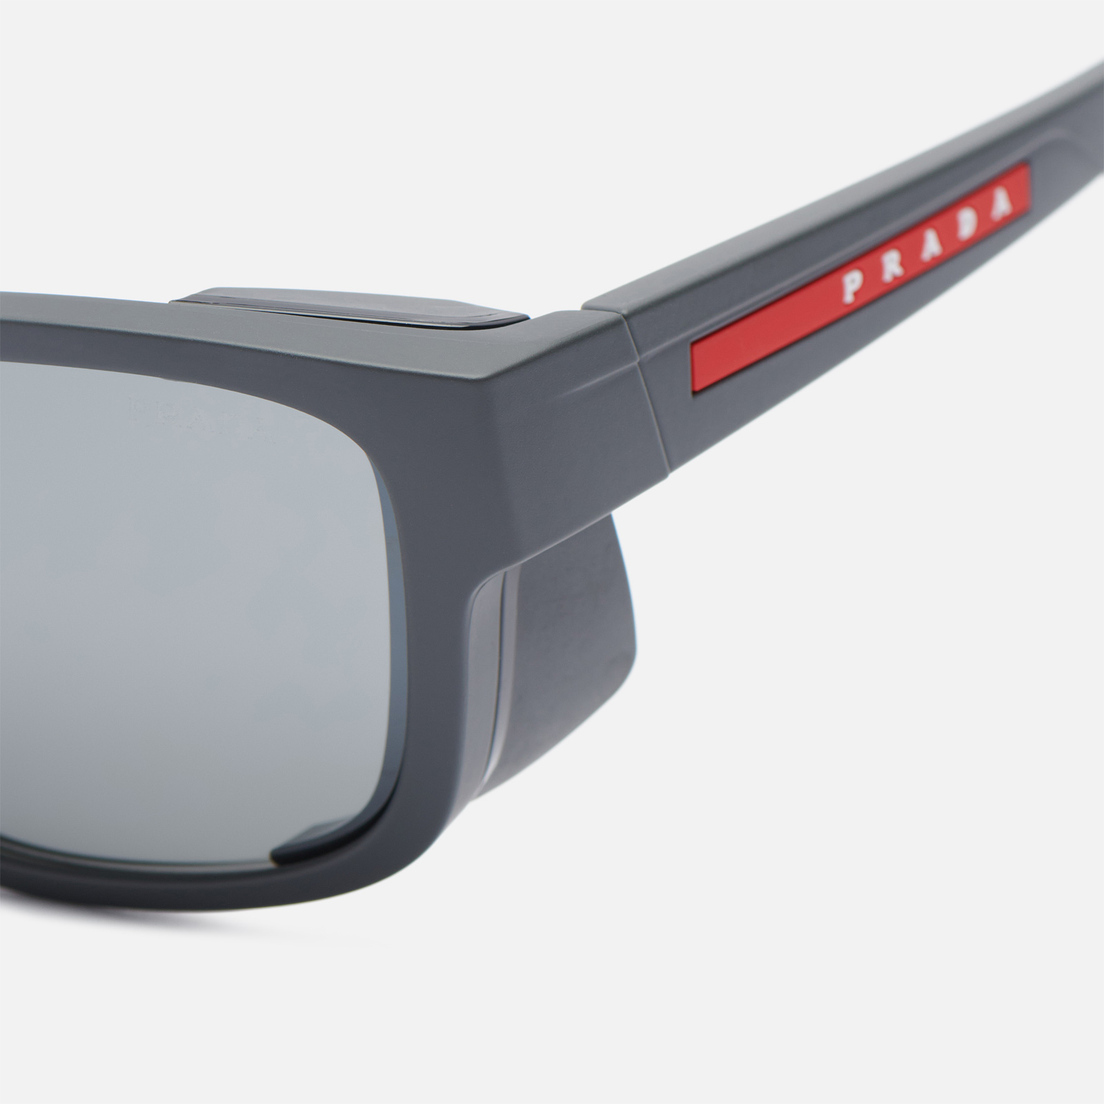 Prada Linea Rossa Солнцезащитные очки 07WS UFK60A